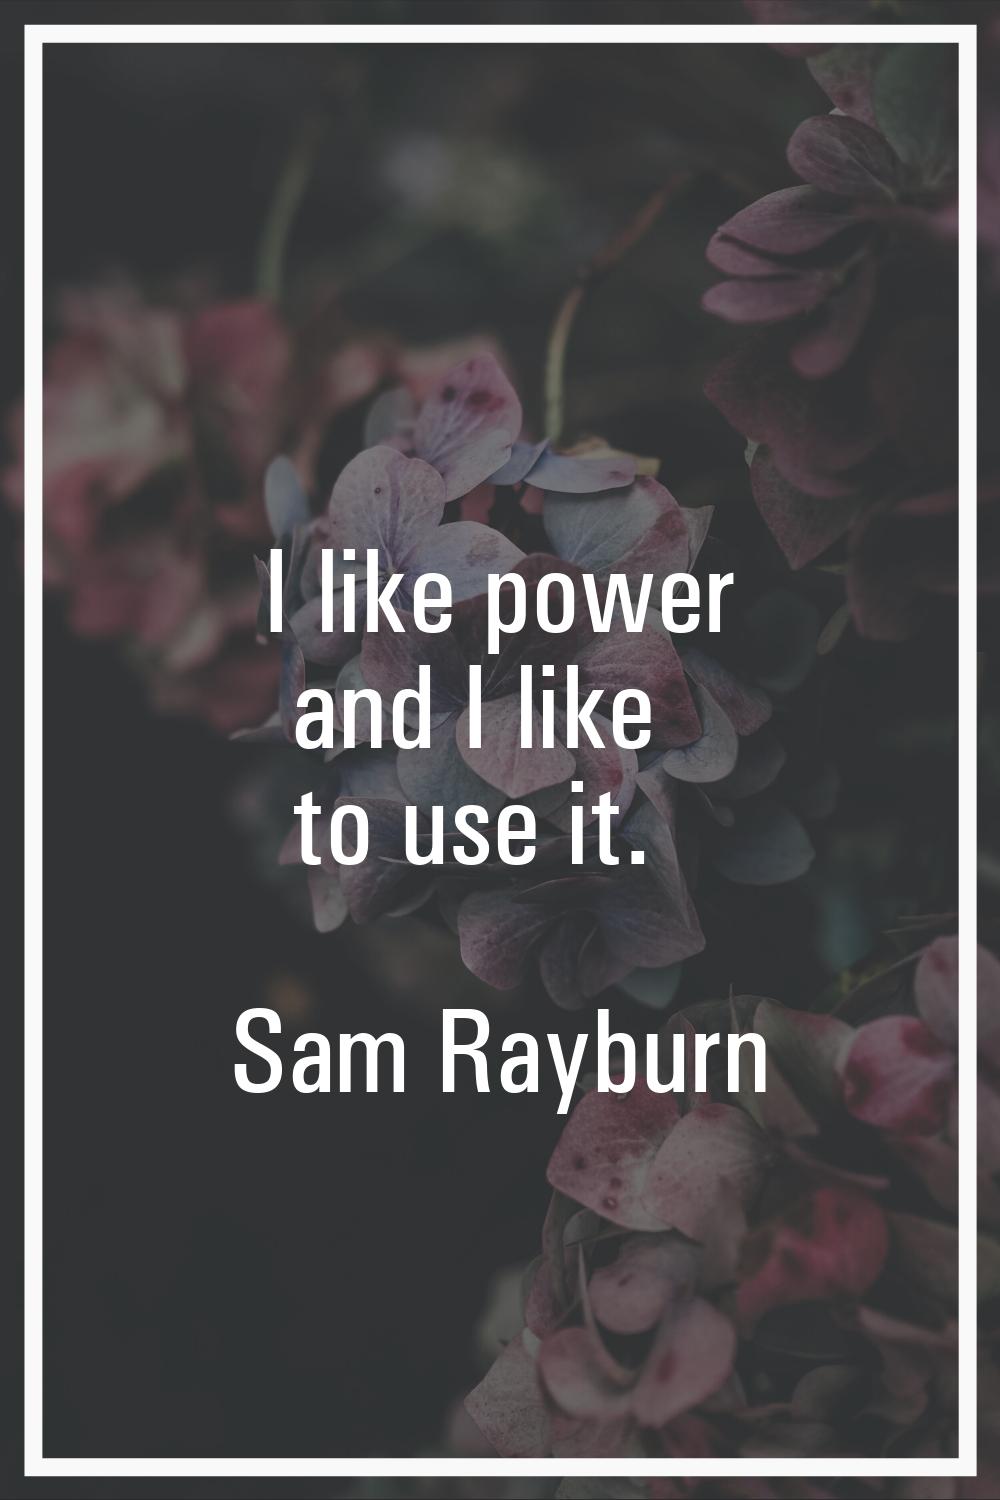 I like power and I like to use it.